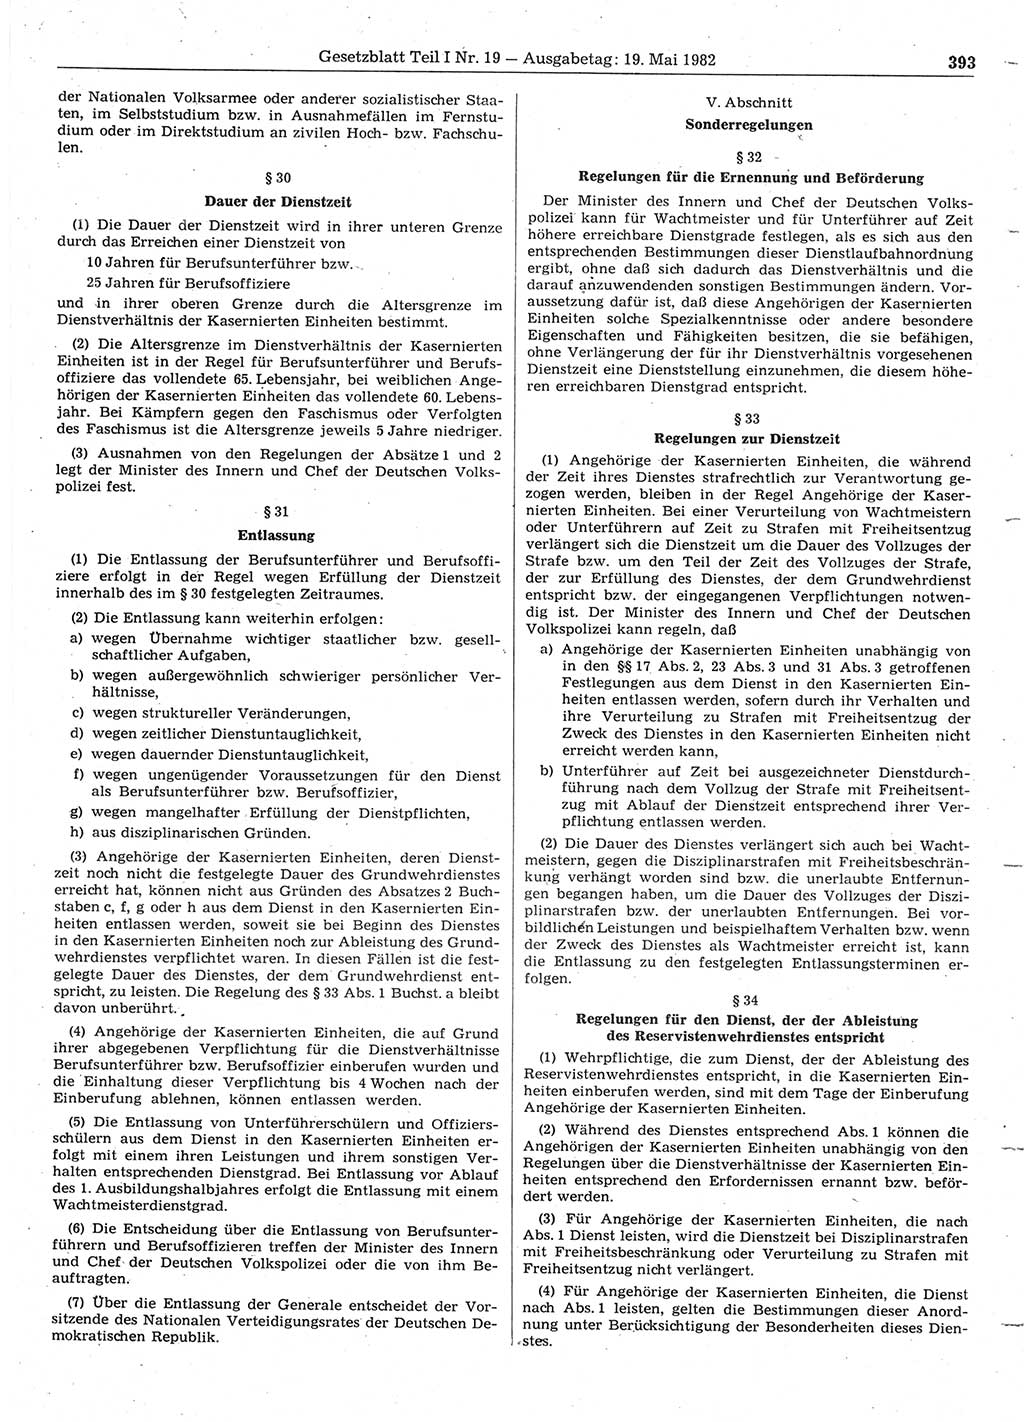 Gesetzblatt (GBl.) der Deutschen Demokratischen Republik (DDR) Teil Ⅰ 1982, Seite 393 (GBl. DDR Ⅰ 1982, S. 393)